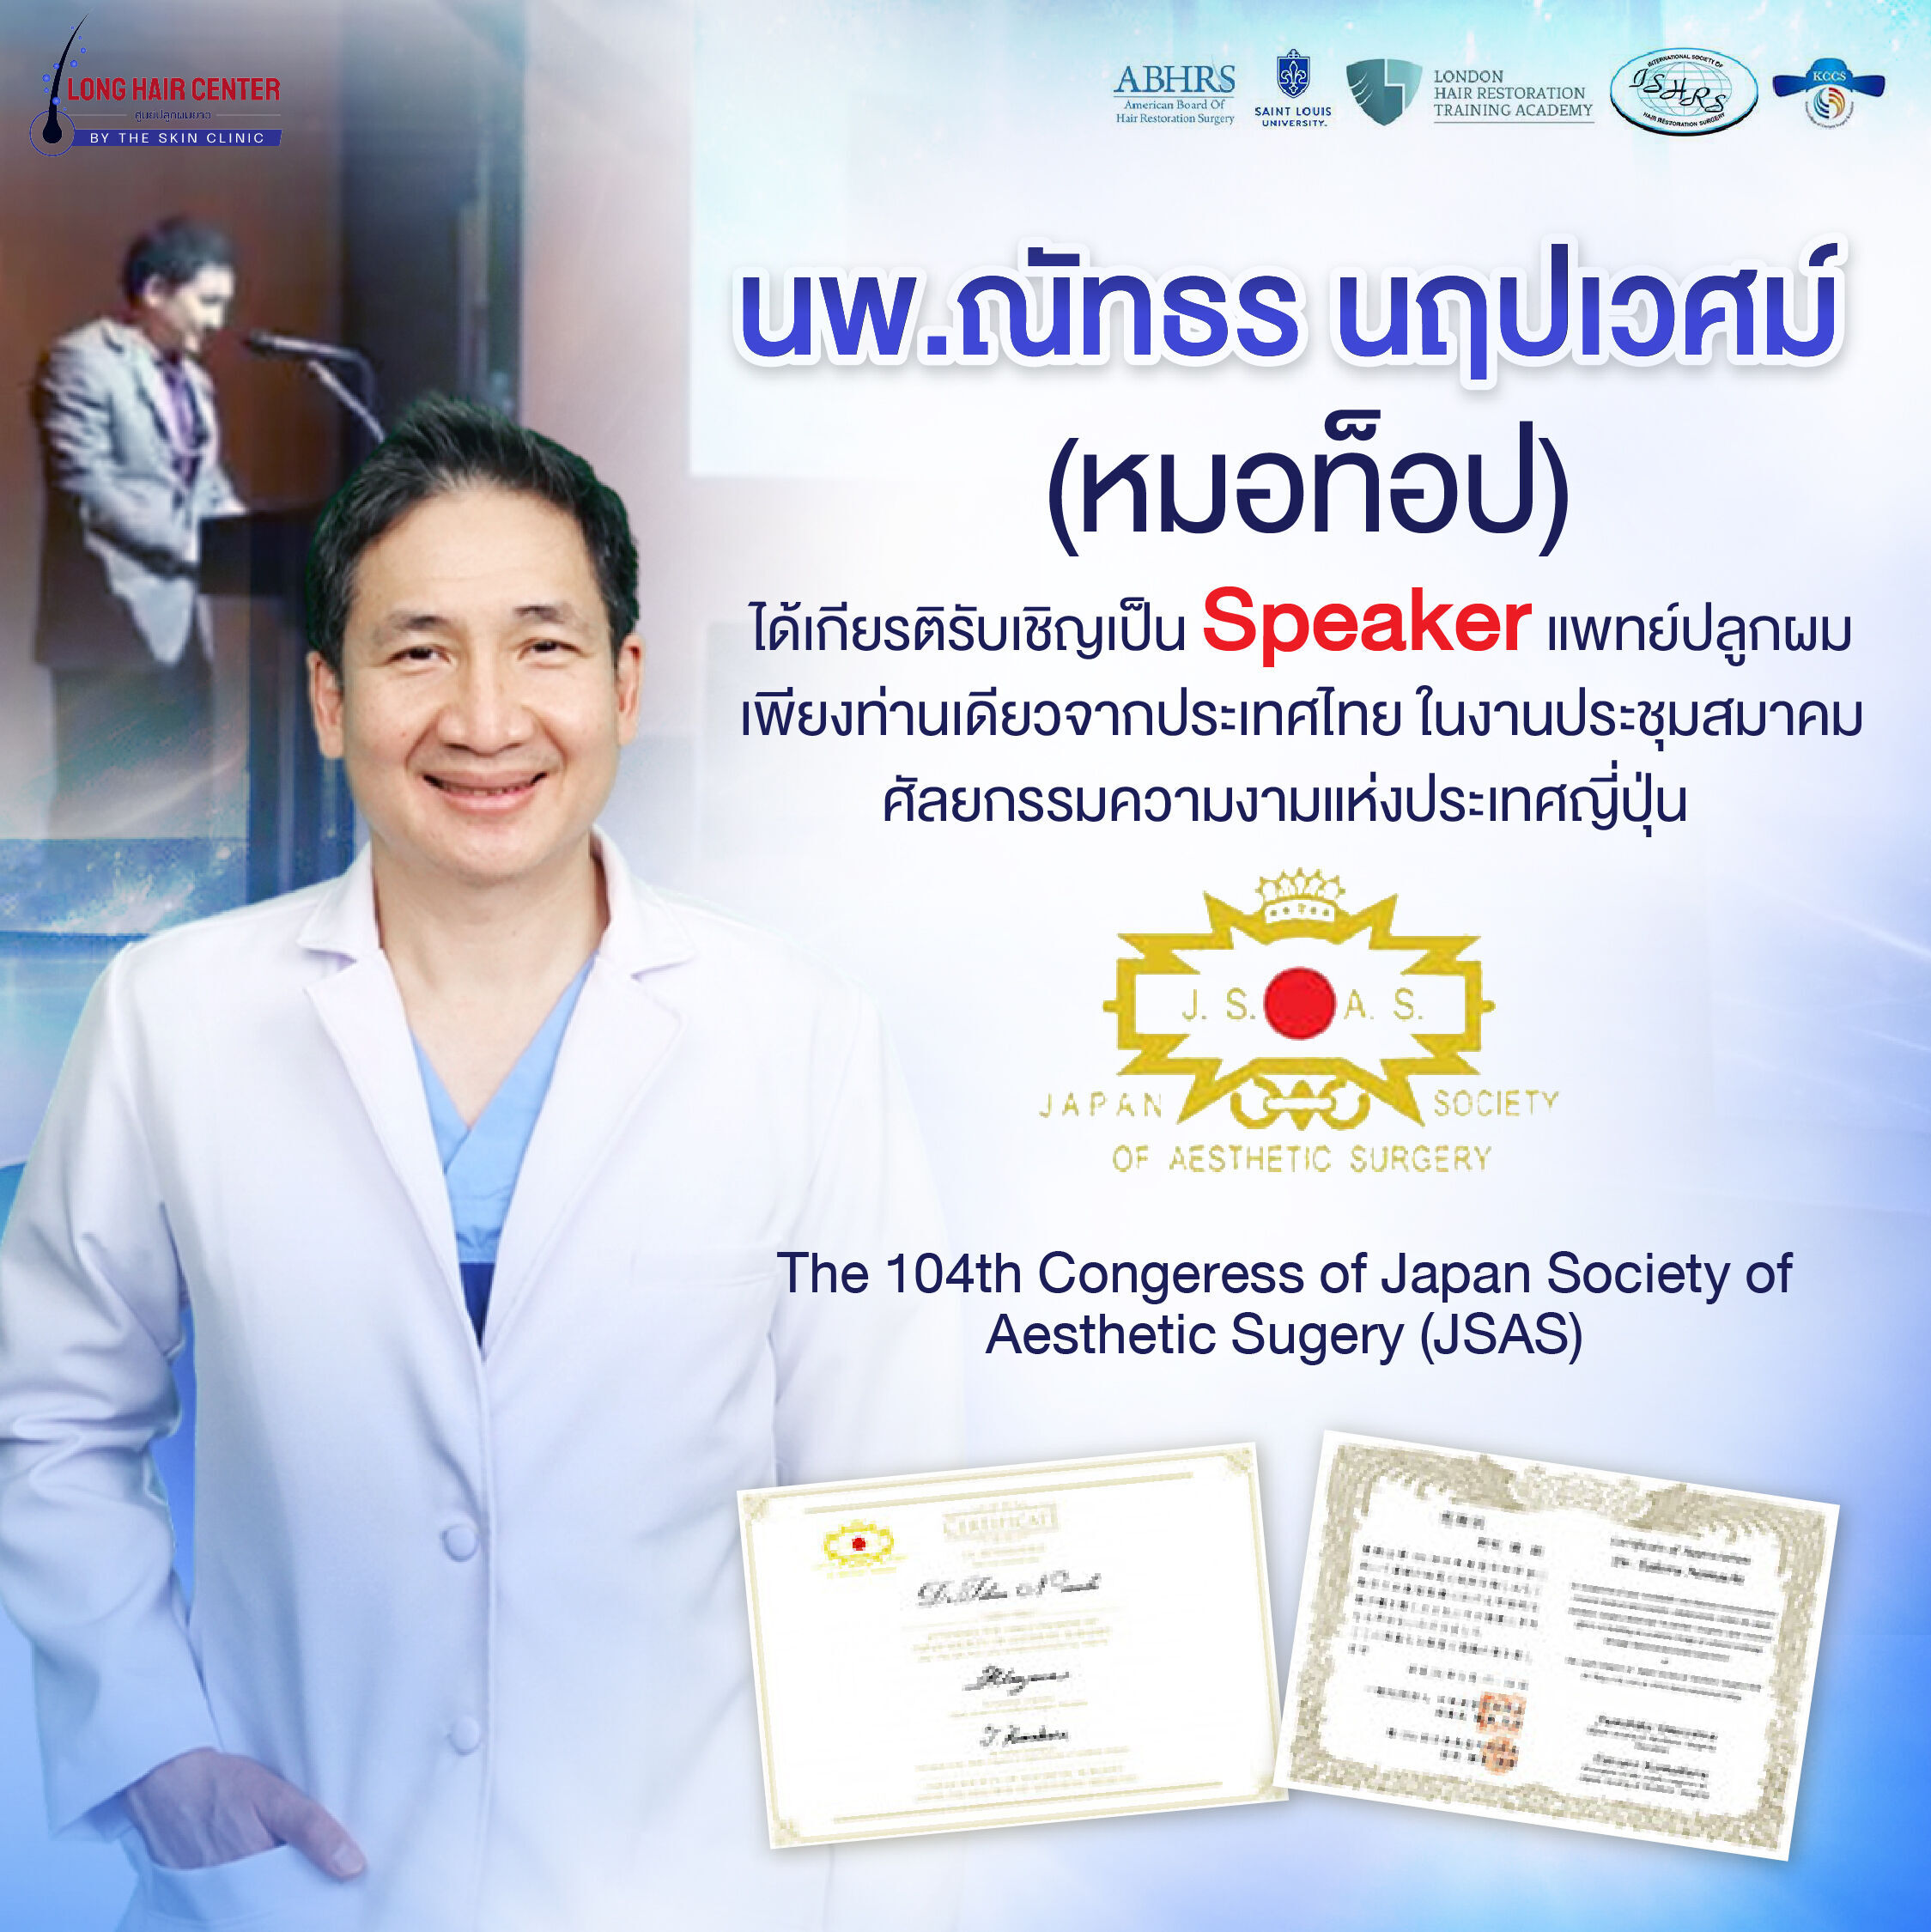 ได้รับเชิญเป็นวิทยากร ที่งานสมาคมศัลยกรรมความงามประเทศญี่ปุ่น (JSAS)